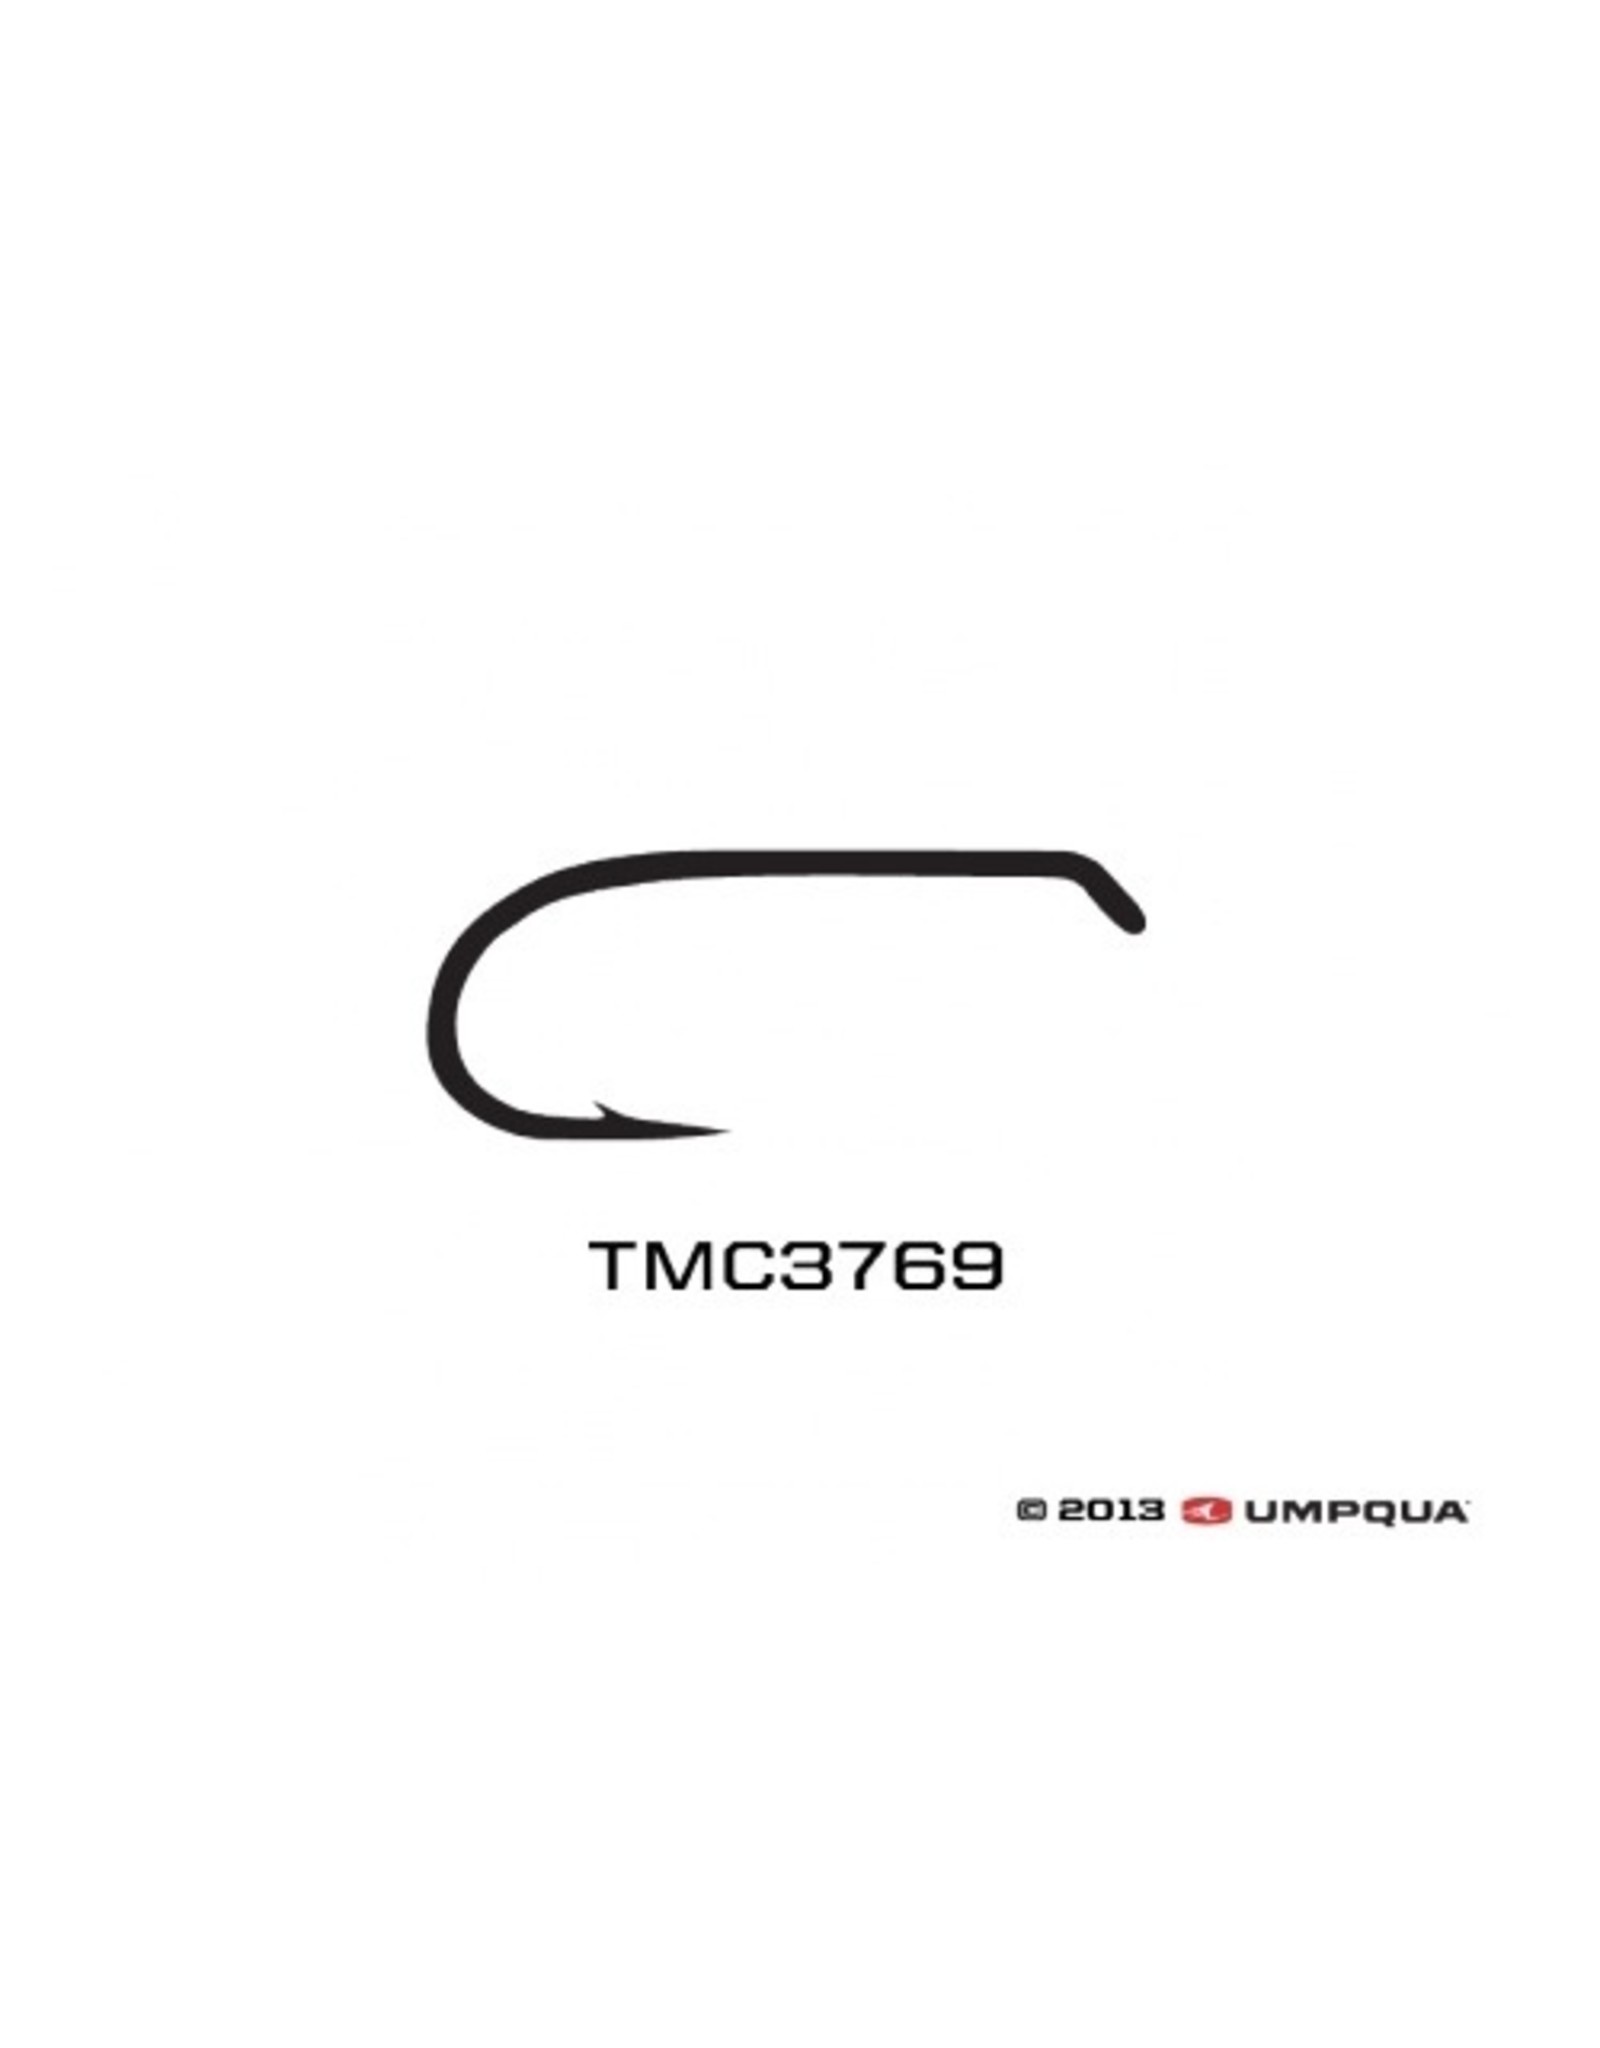 Tiemco TMC 3769 (25 pk)